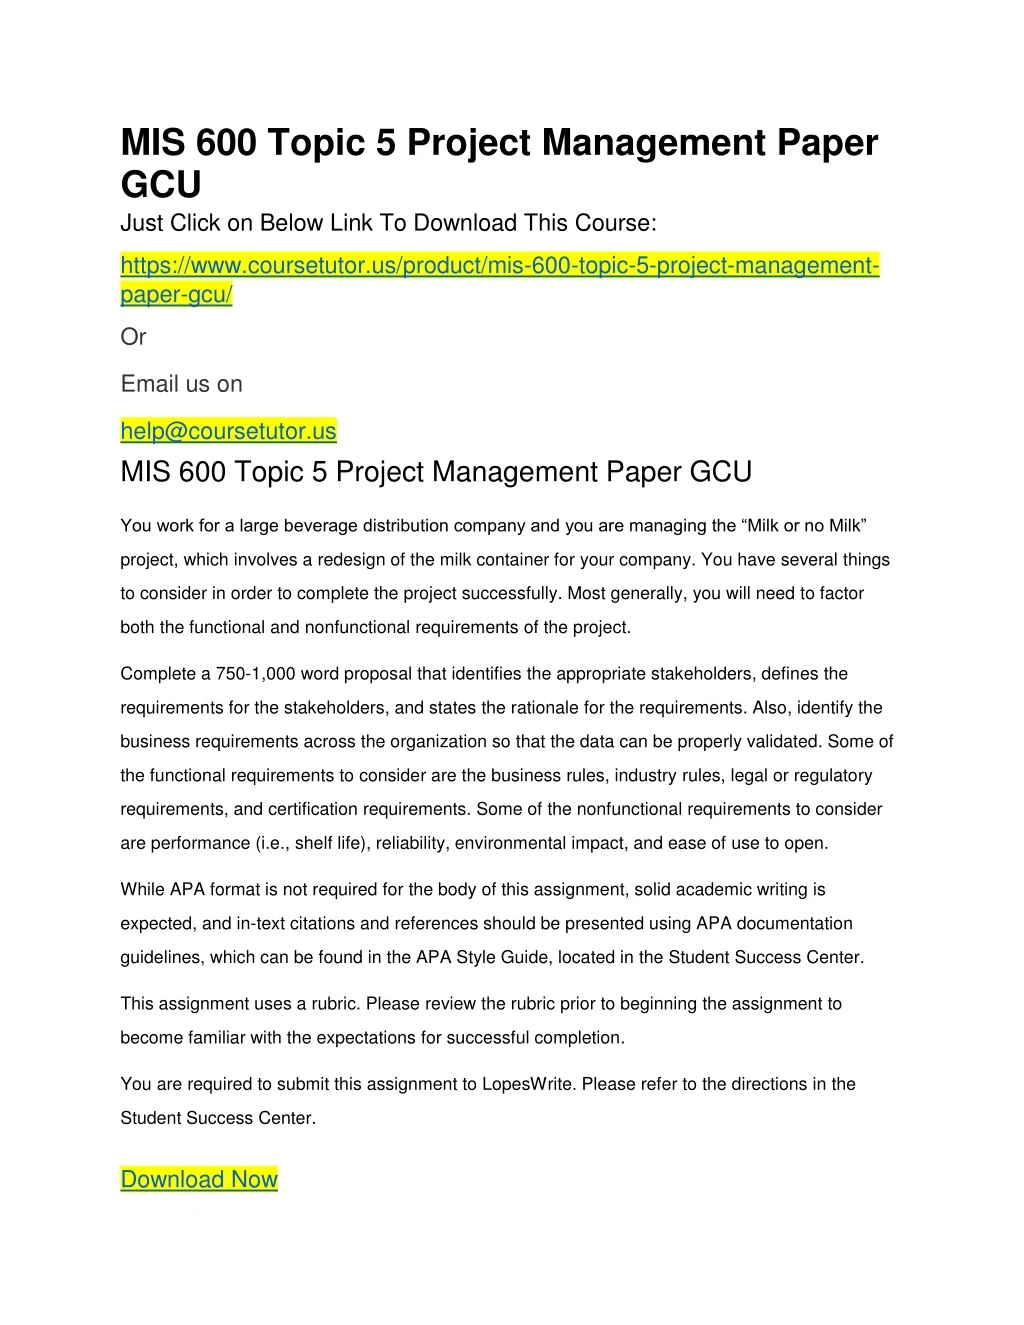 mis 600 topic 5 project management paper gcu just